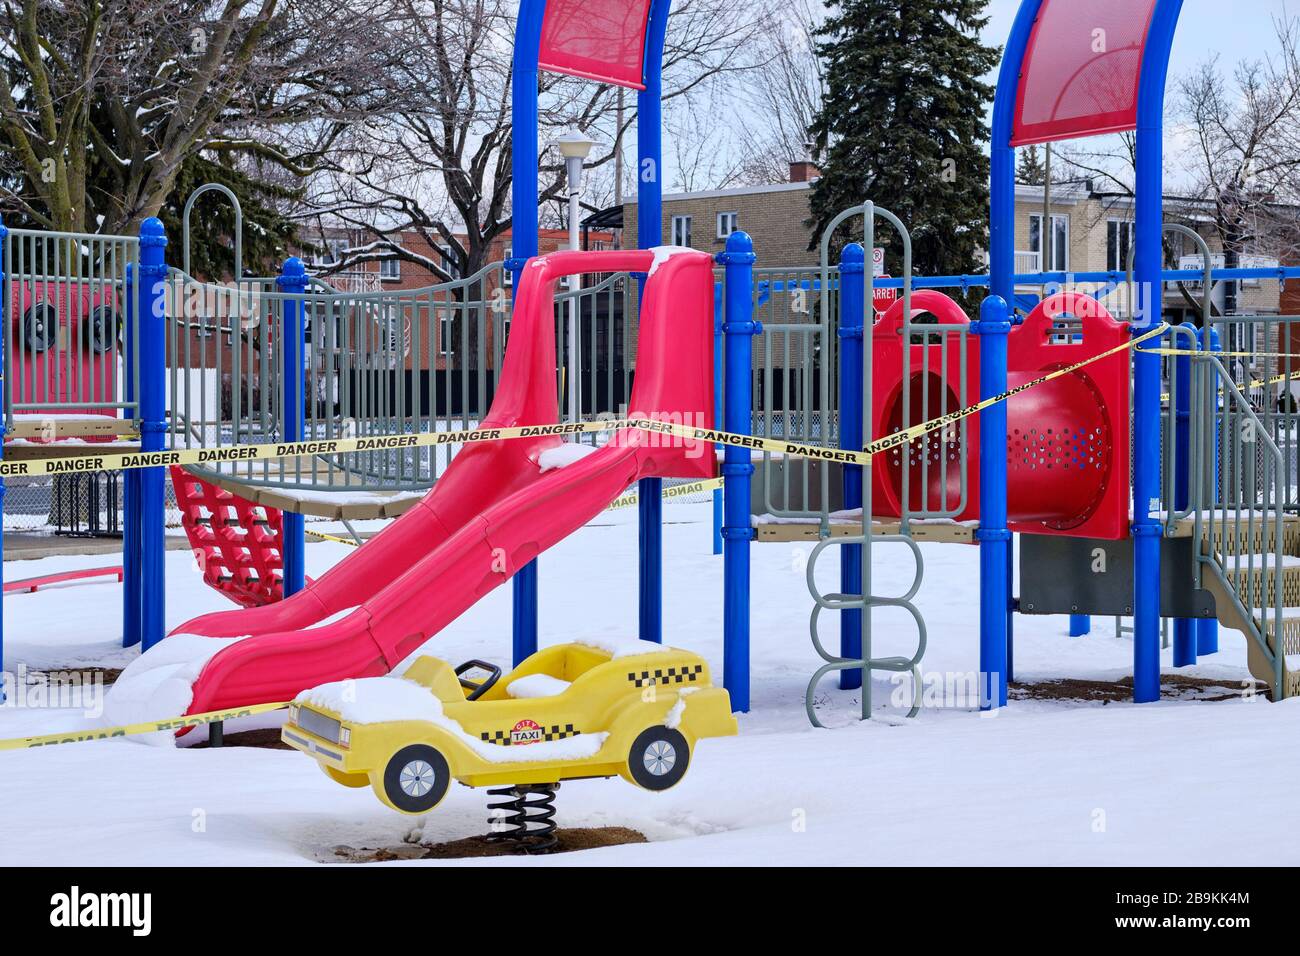 Montréal, Québec, Canada. 24 mars 2020. Ferme le terrain de jeu pour enfants sous la neige fraîche alors que la province de Québec entre dans une pause de trois semaines avec tous les services sauf essentiels commandés pour s'arrêter à minuit aujourd'hui. Banque D'Images